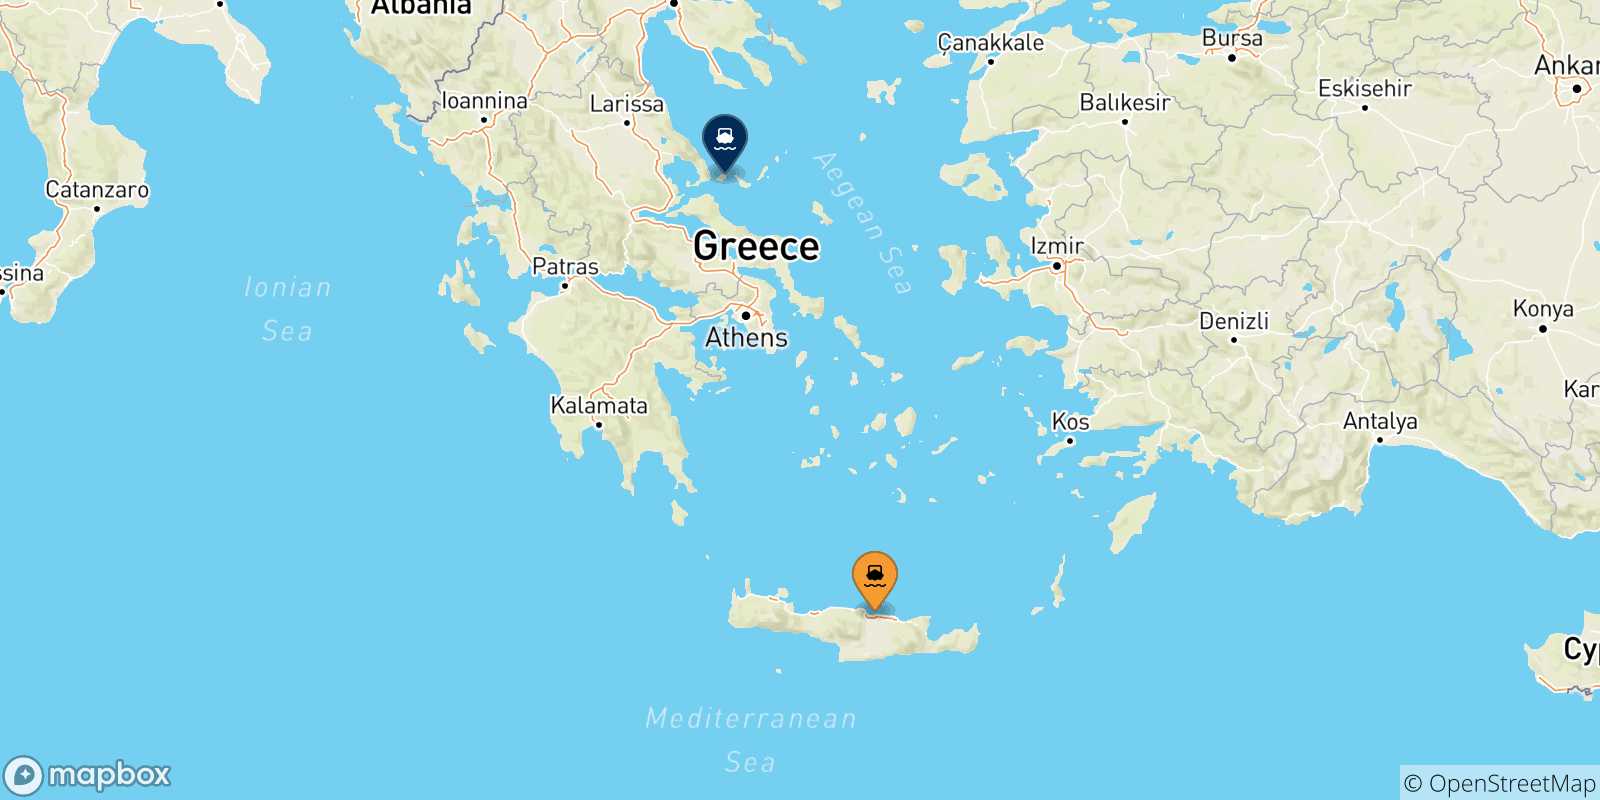 Mappa delle possibili rotte tra Creta e le Isole Sporadi